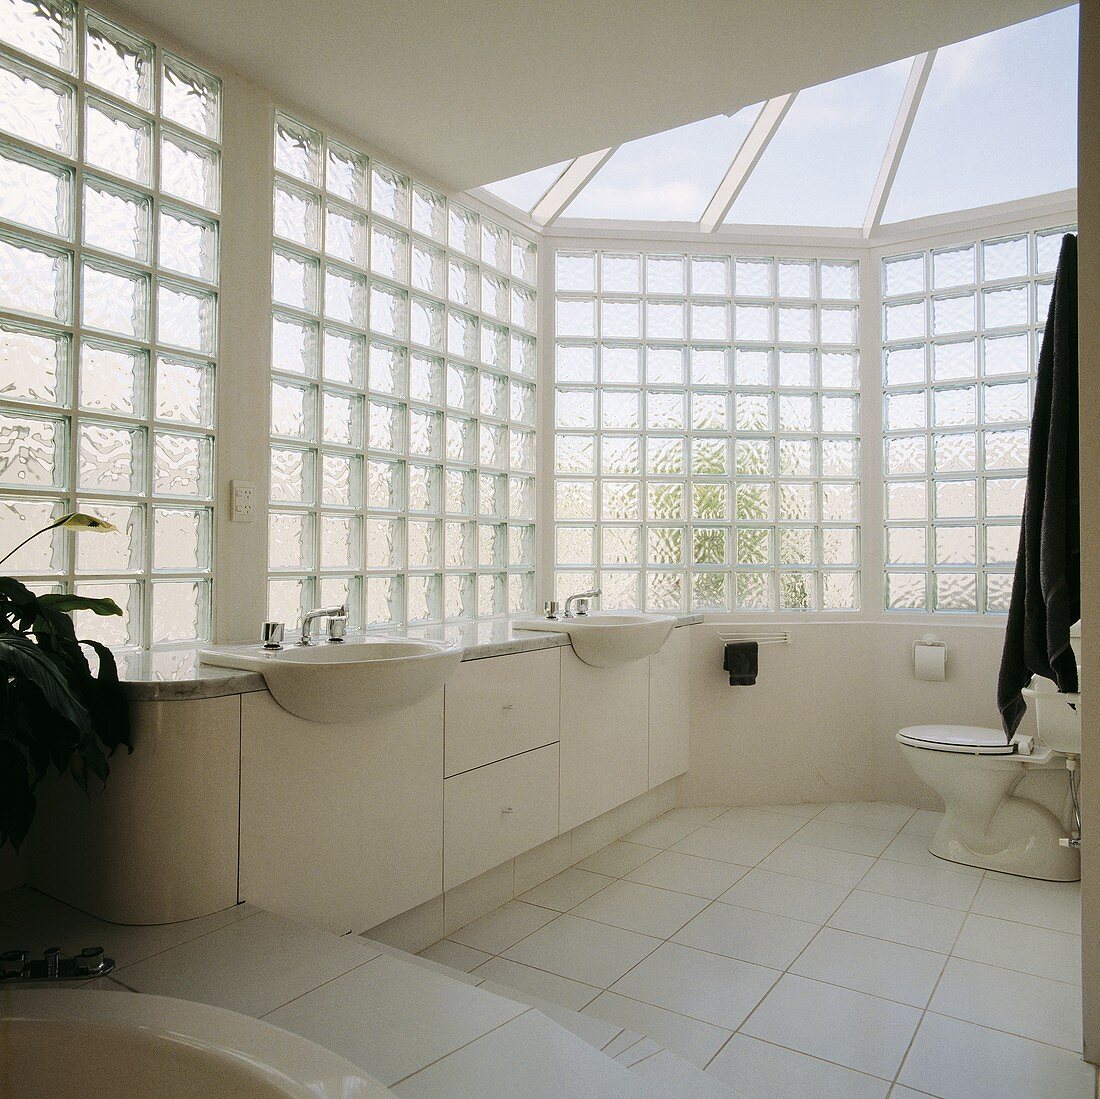 Modernes weisses Bad mit Wänden aus Glasbausteinen und Glasdach